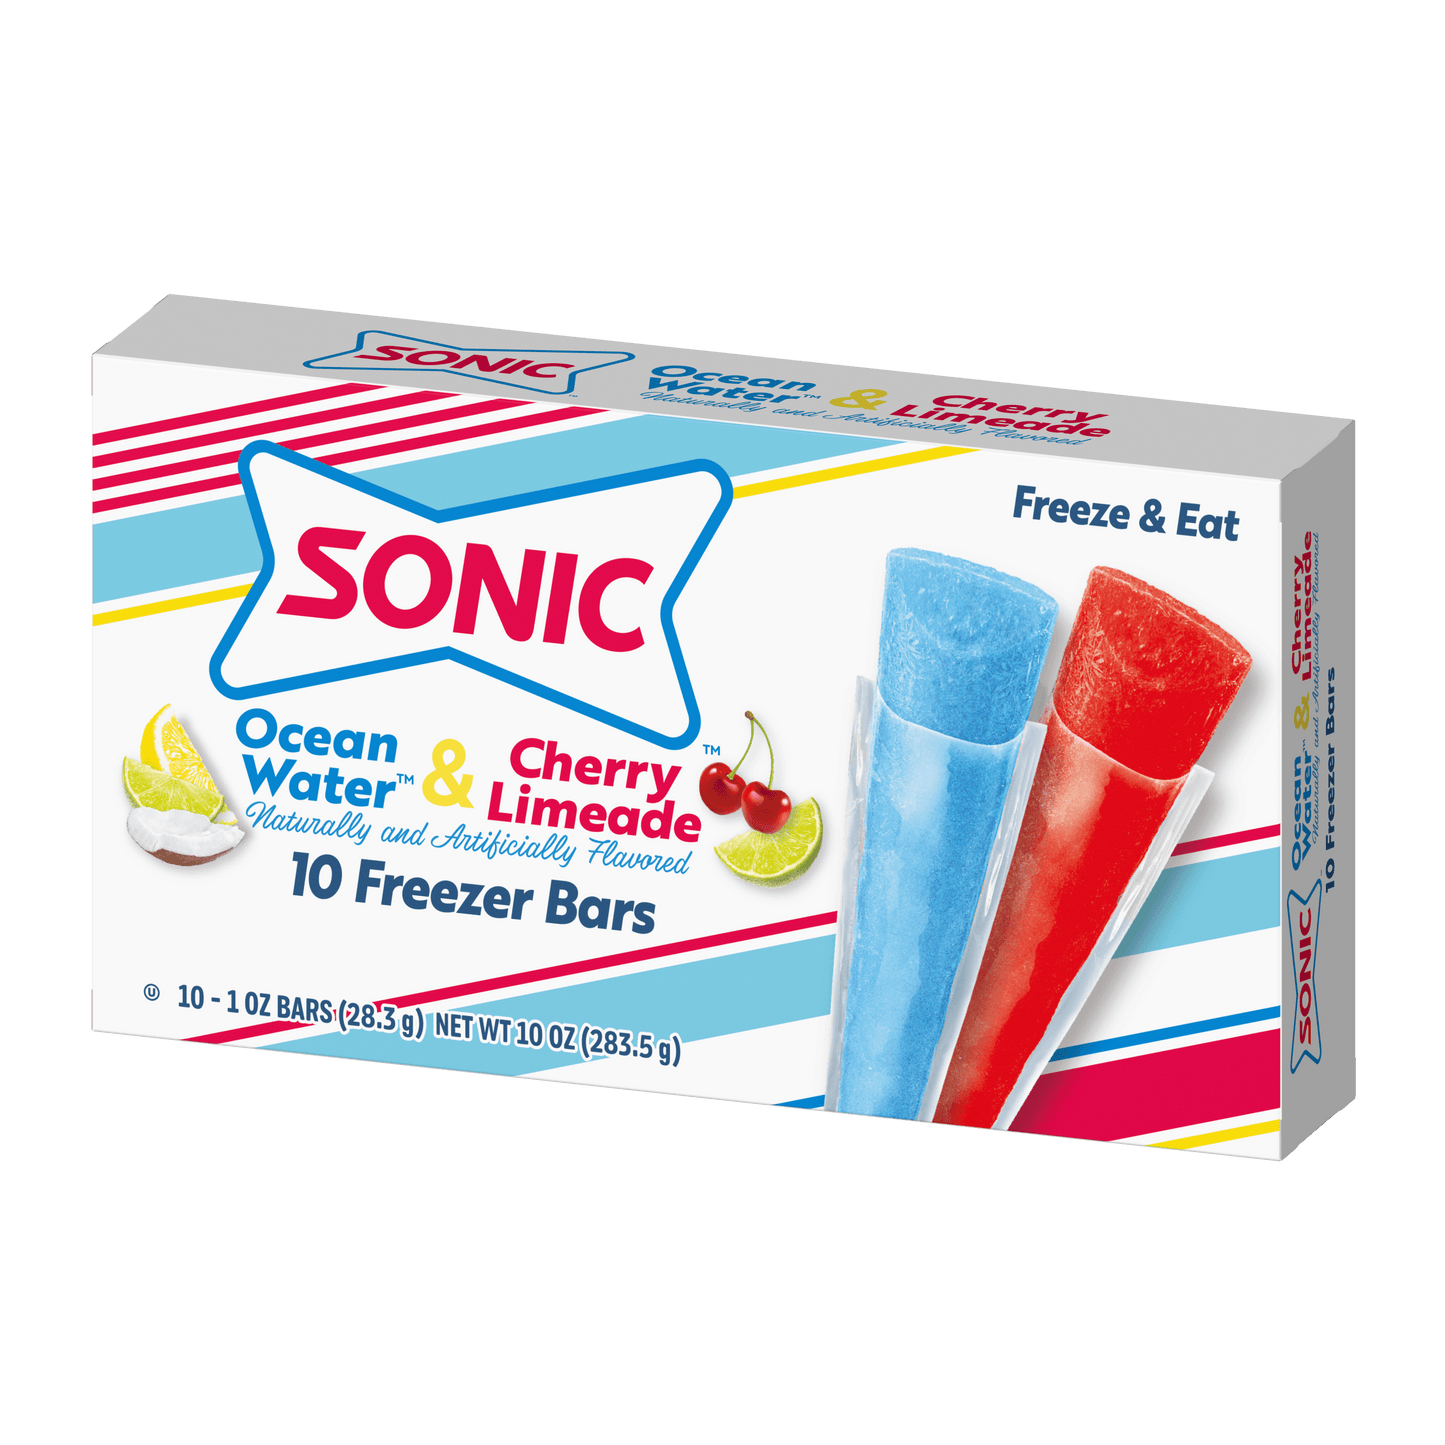 Sonic freezer bars 10 count